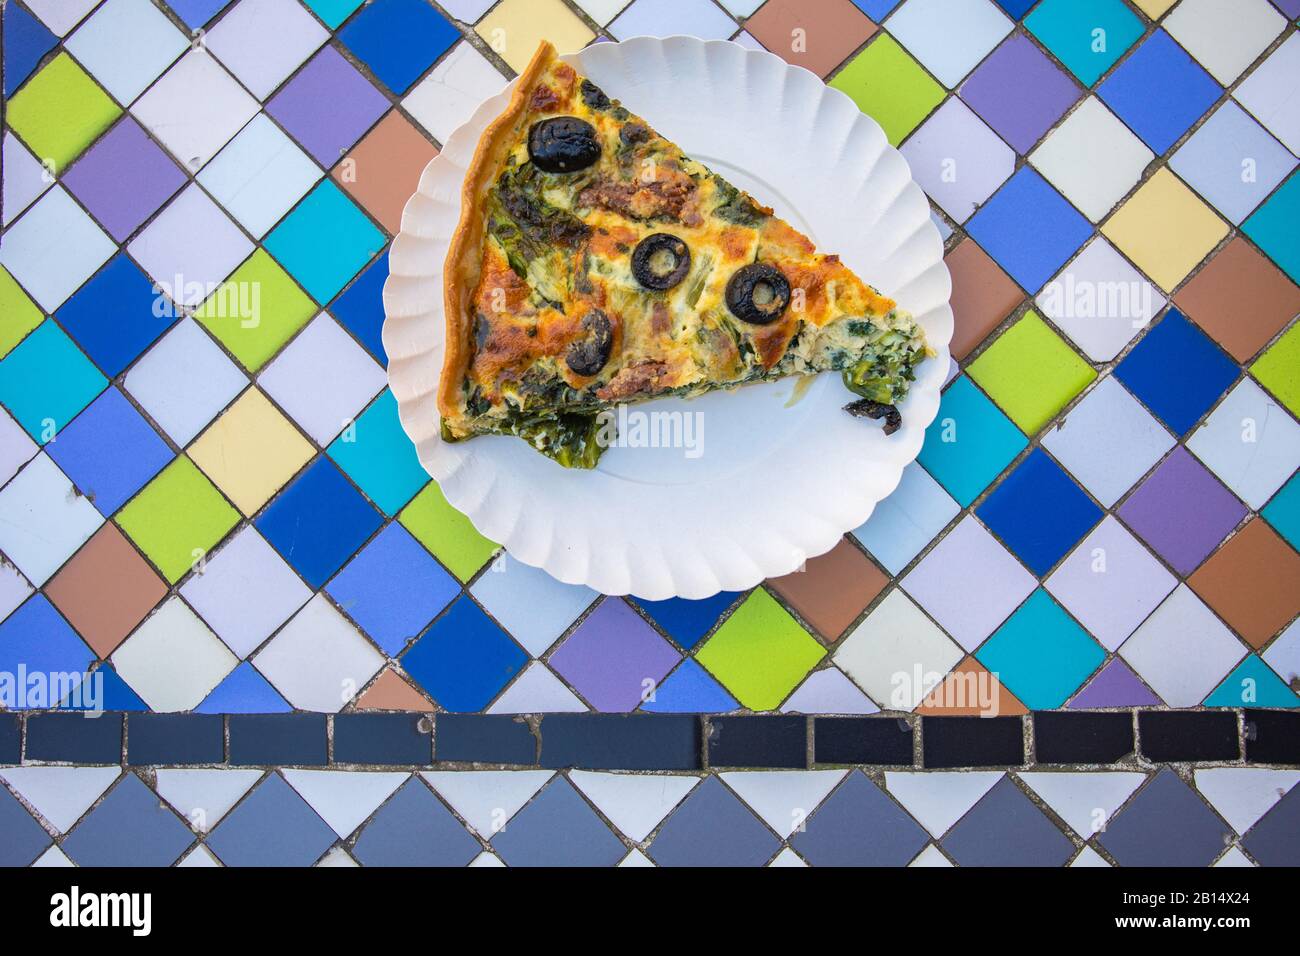 Ein Pice vegetarischer Pastete auf dem Tisch. Köstliches gesundes Essen auf farbenfrohem Hintergrund. Stockfoto